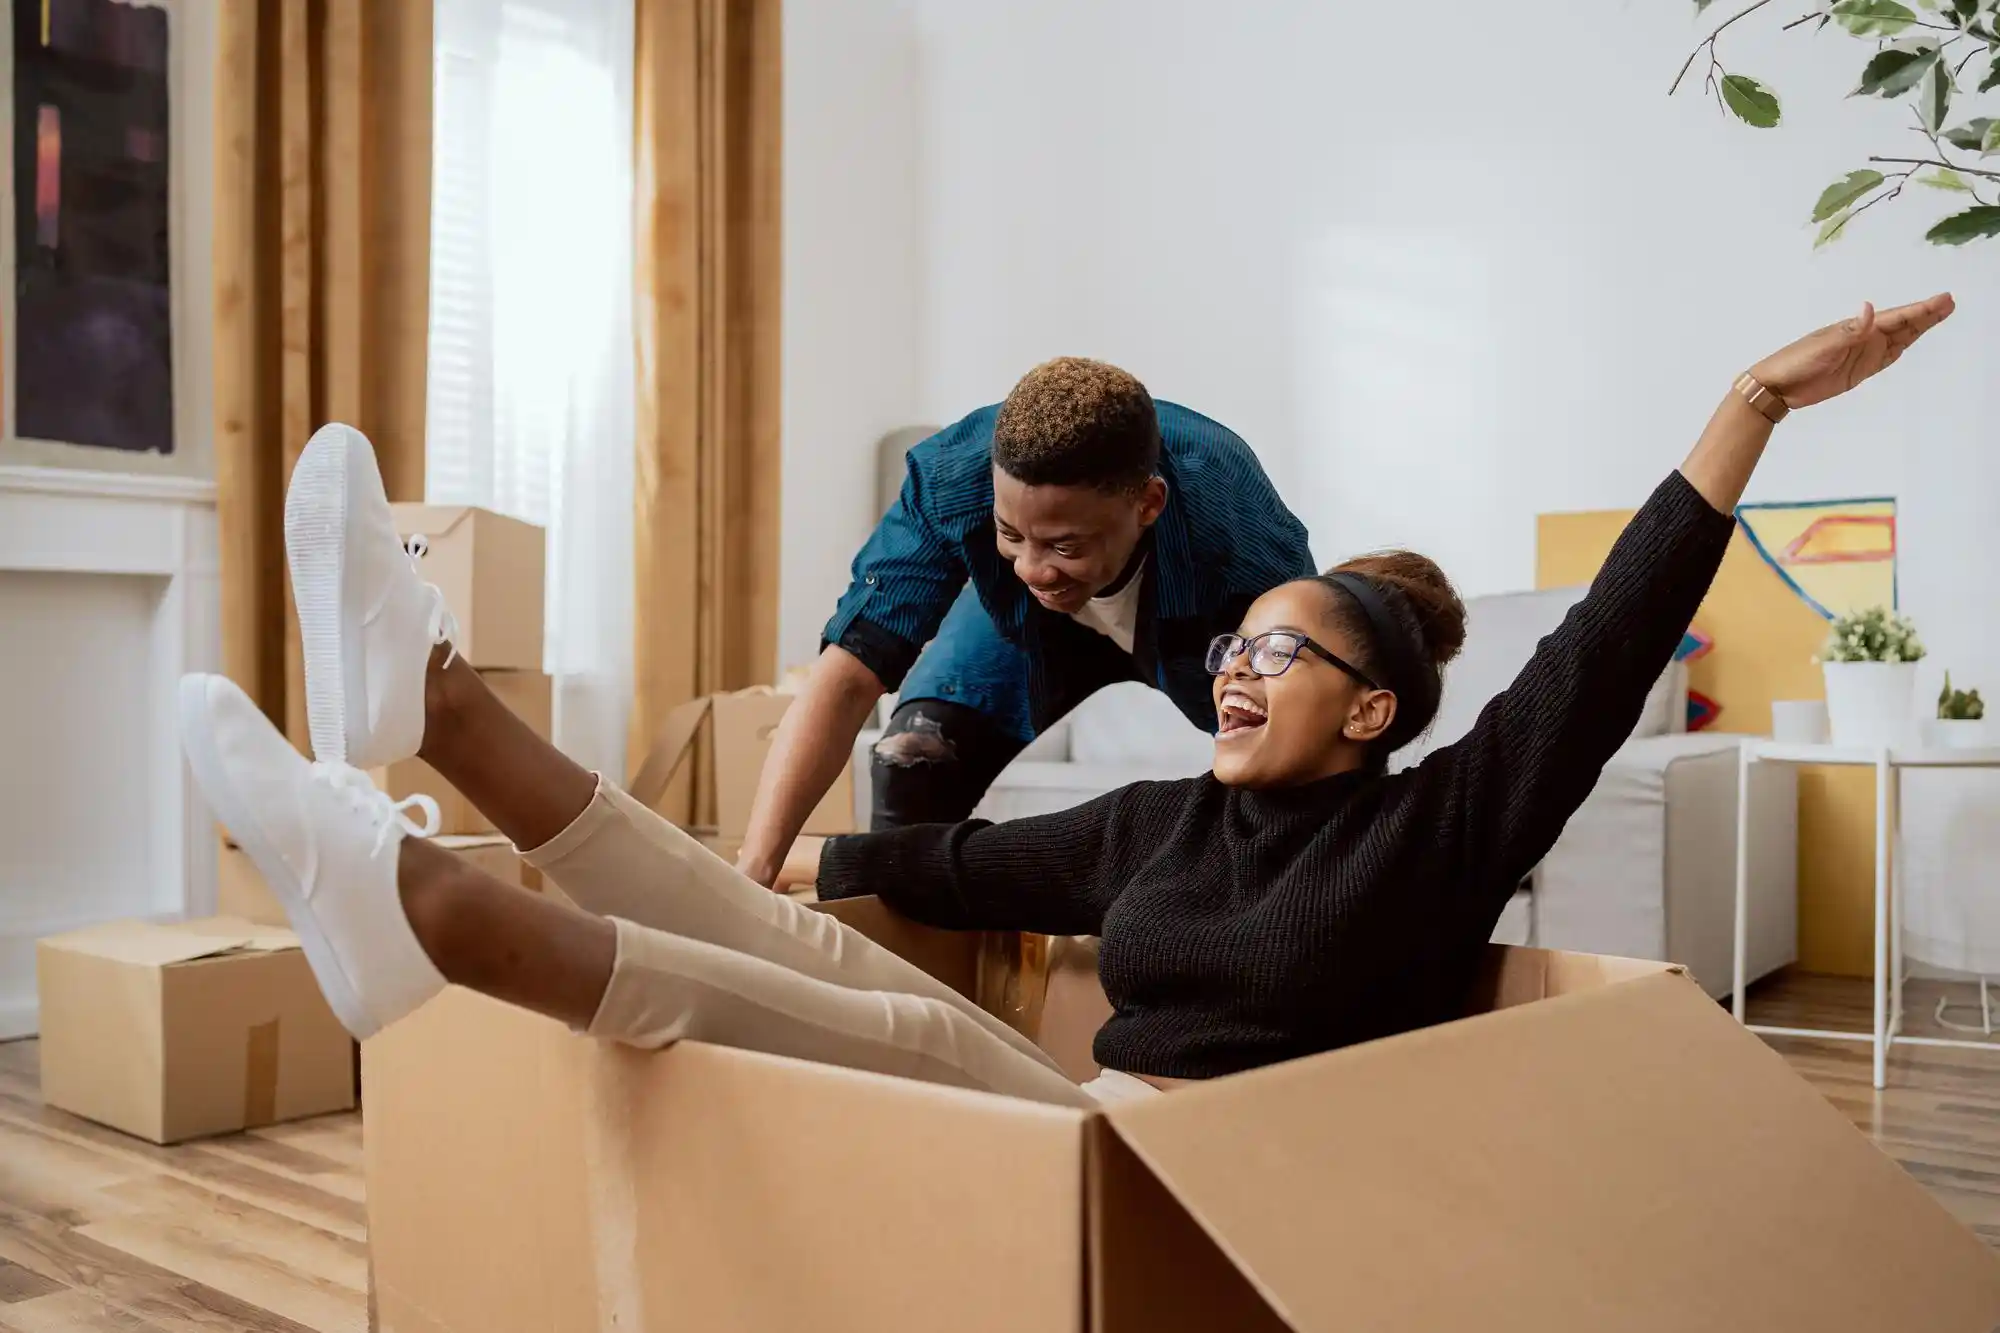 Apartamento mobiliado para alugar: casal se divertindo com as caixas da casa nova.